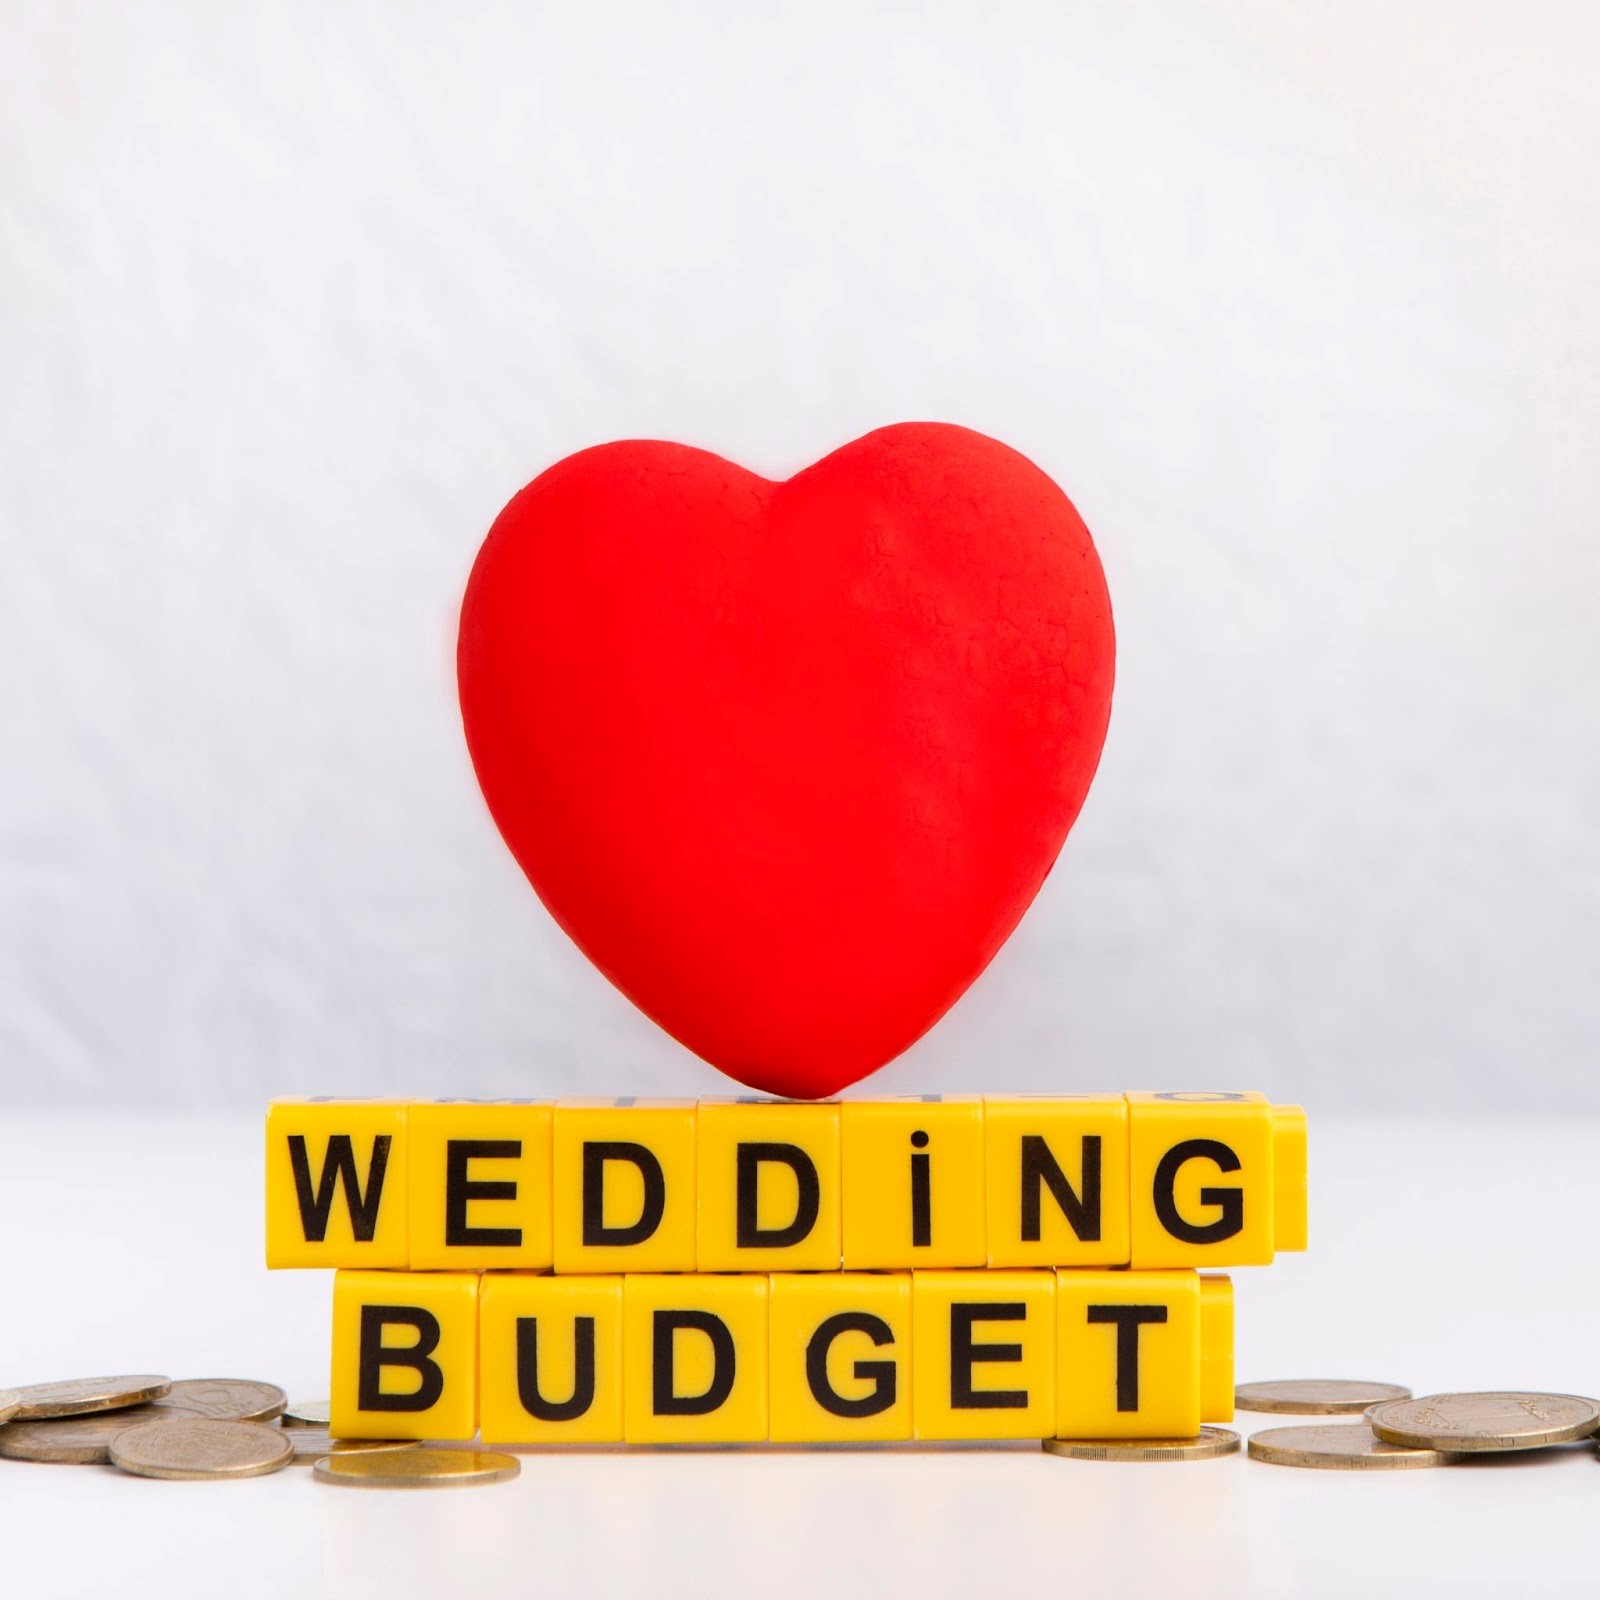 Wedding Budget Image - Go For Desi